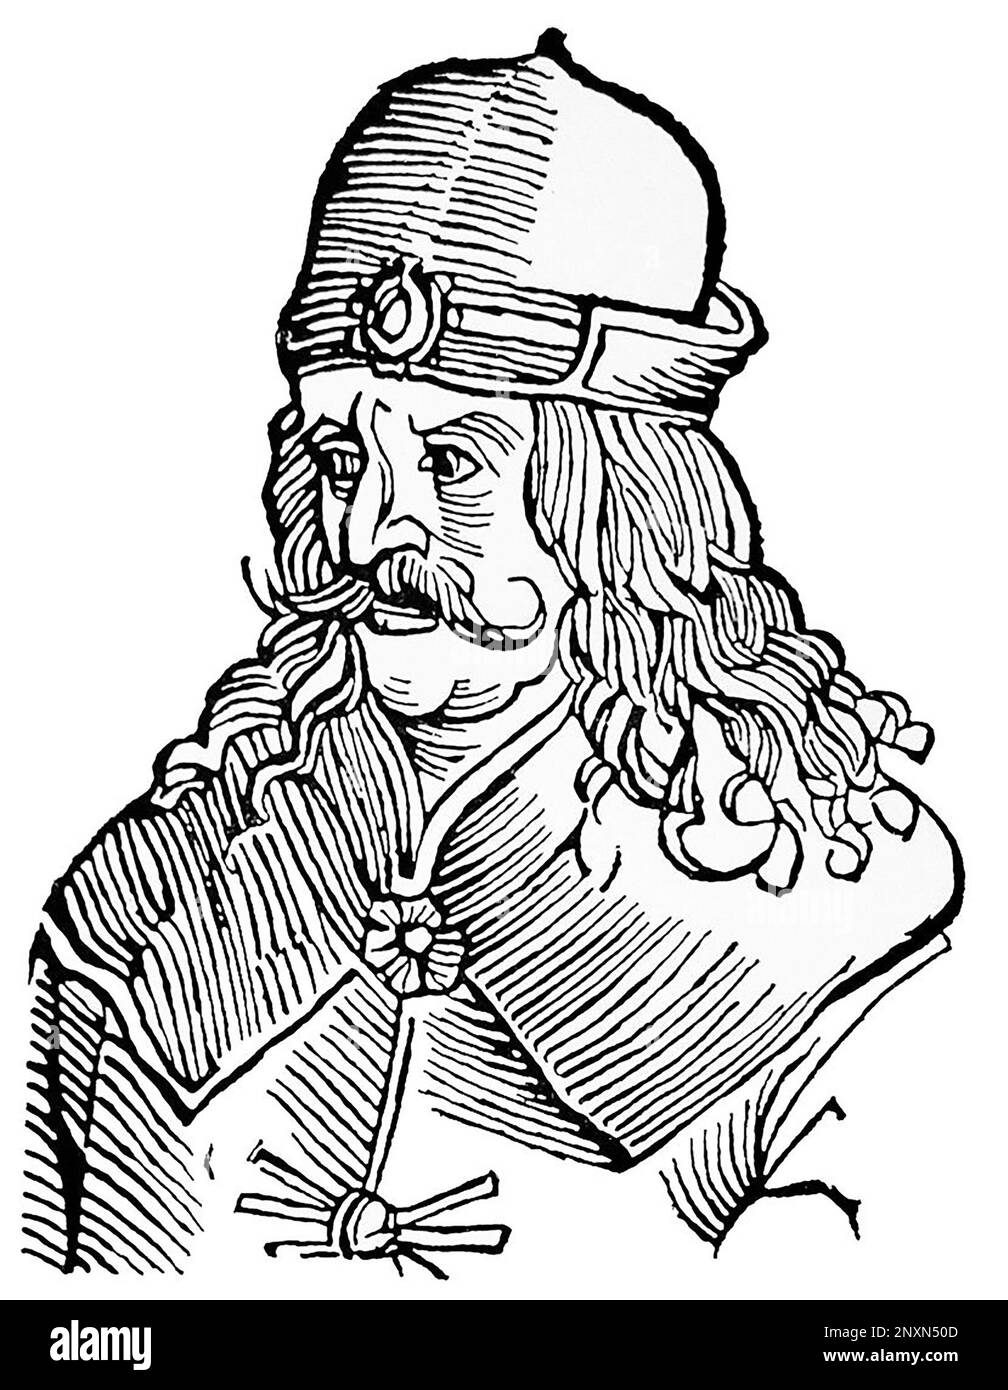 Vlad III, comunemente noto come Vlad l'impalatore o Vlad Dracula (1428/31, ai 1476/77), è stato Voivode di Wallachia tre volte. È spesso considerato uno dei più importanti governanti della storia della Vallachia e un eroe nazionale della Romania. Noto per la sua crudeltà, il suo patronimico ispirò il nome del vampiro letterario di Bram Stoker, il conte Dracula. Illustrazione dopo un'incisione del 16th° secolo. Foto Stock